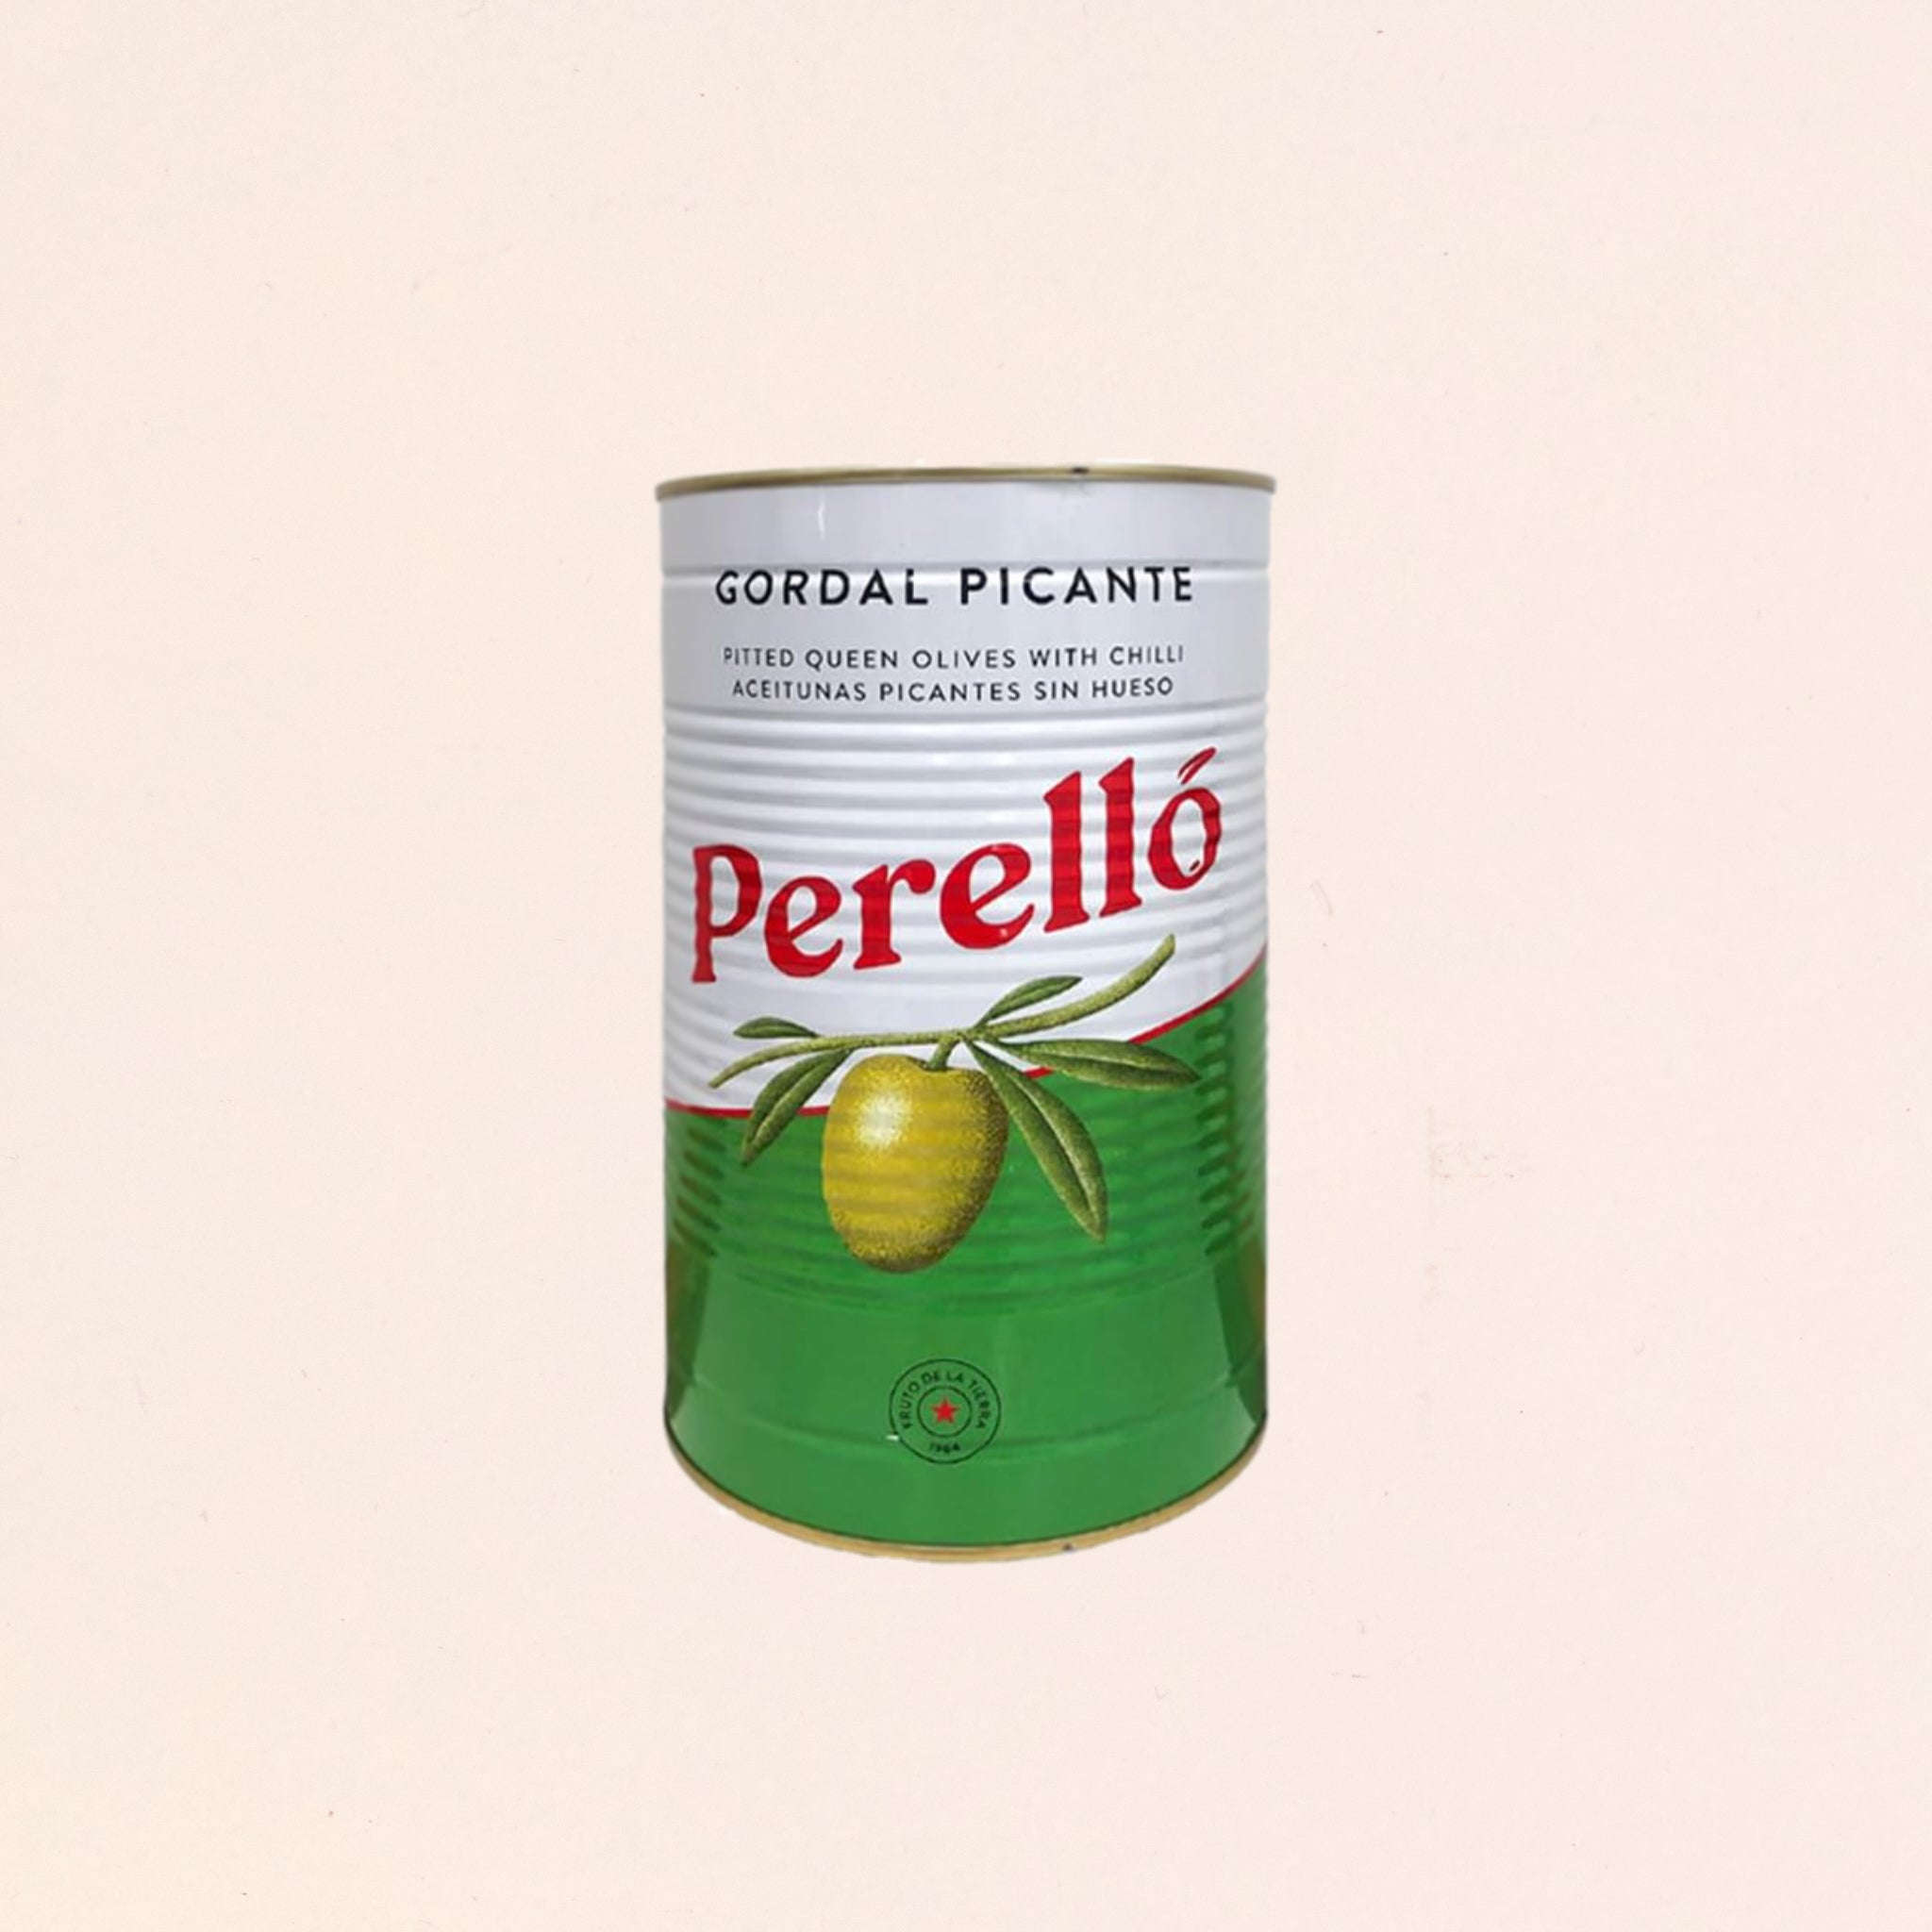 Tin of Perello Olives